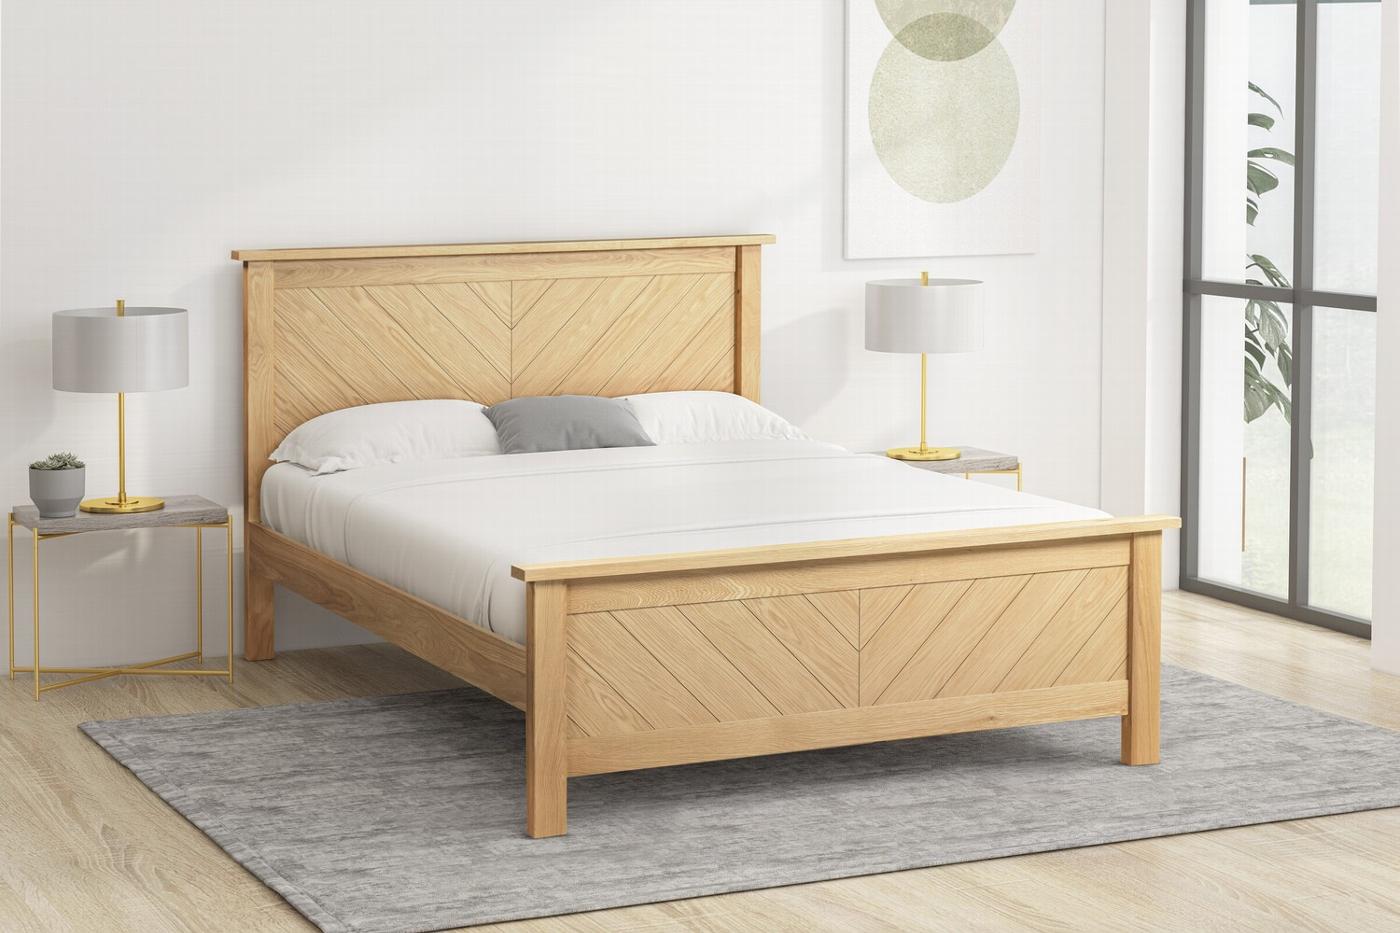 Kenji wooden bed frame